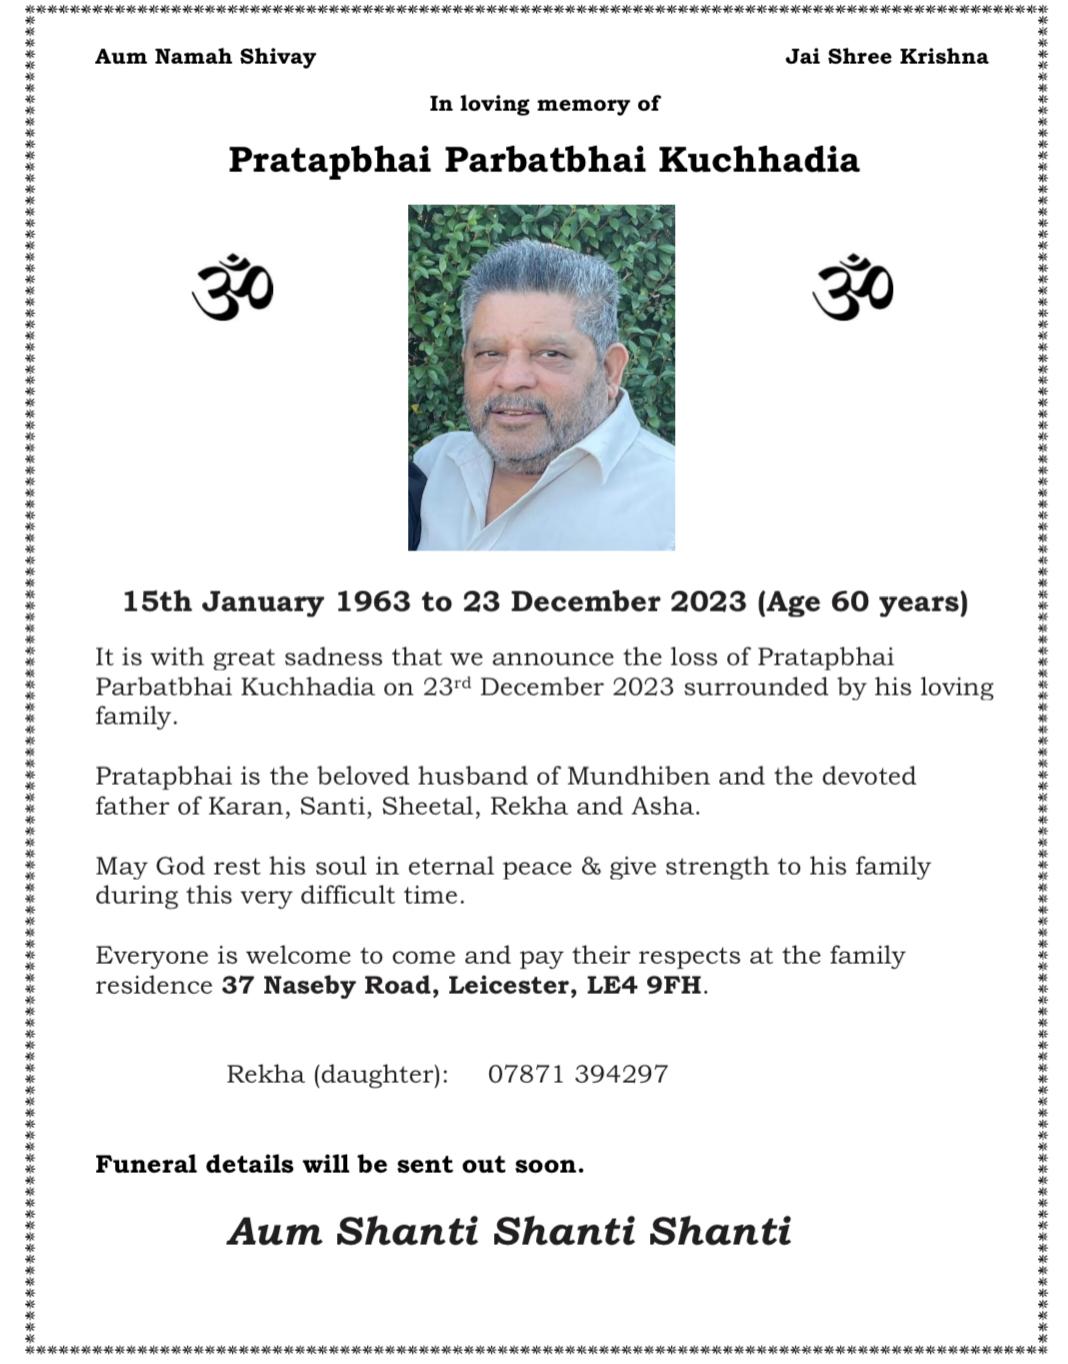 Pratapbhai Parbatbhai Kuchhadia passed away